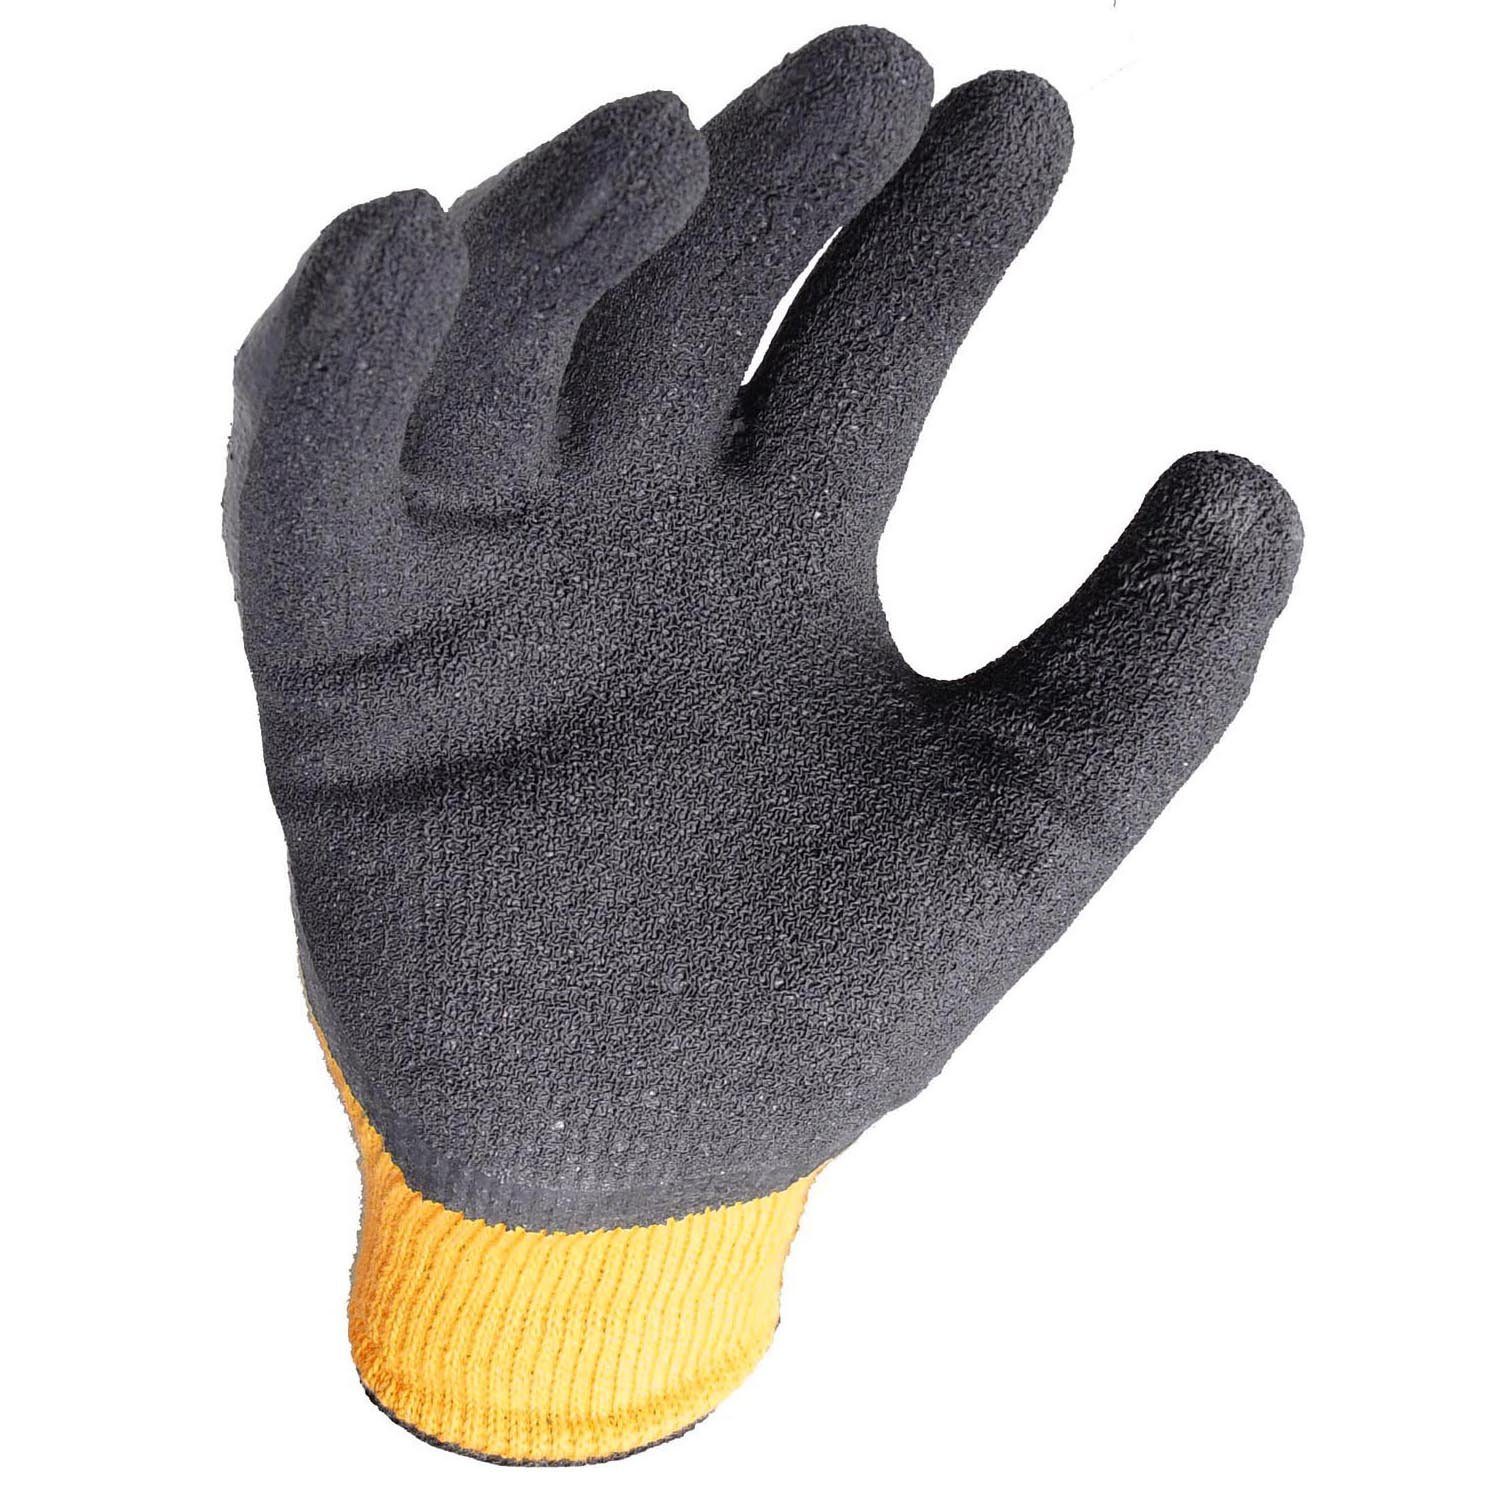 DeWalt Montage-Handschuhe DPG70LEU Arbeitshandschuh strukturierte Latex-Beschichtung 10) Arbeitshandschuh, Schutzhandschuhe, (Nr. L Gartenhandschuh, Arbeitsschutz